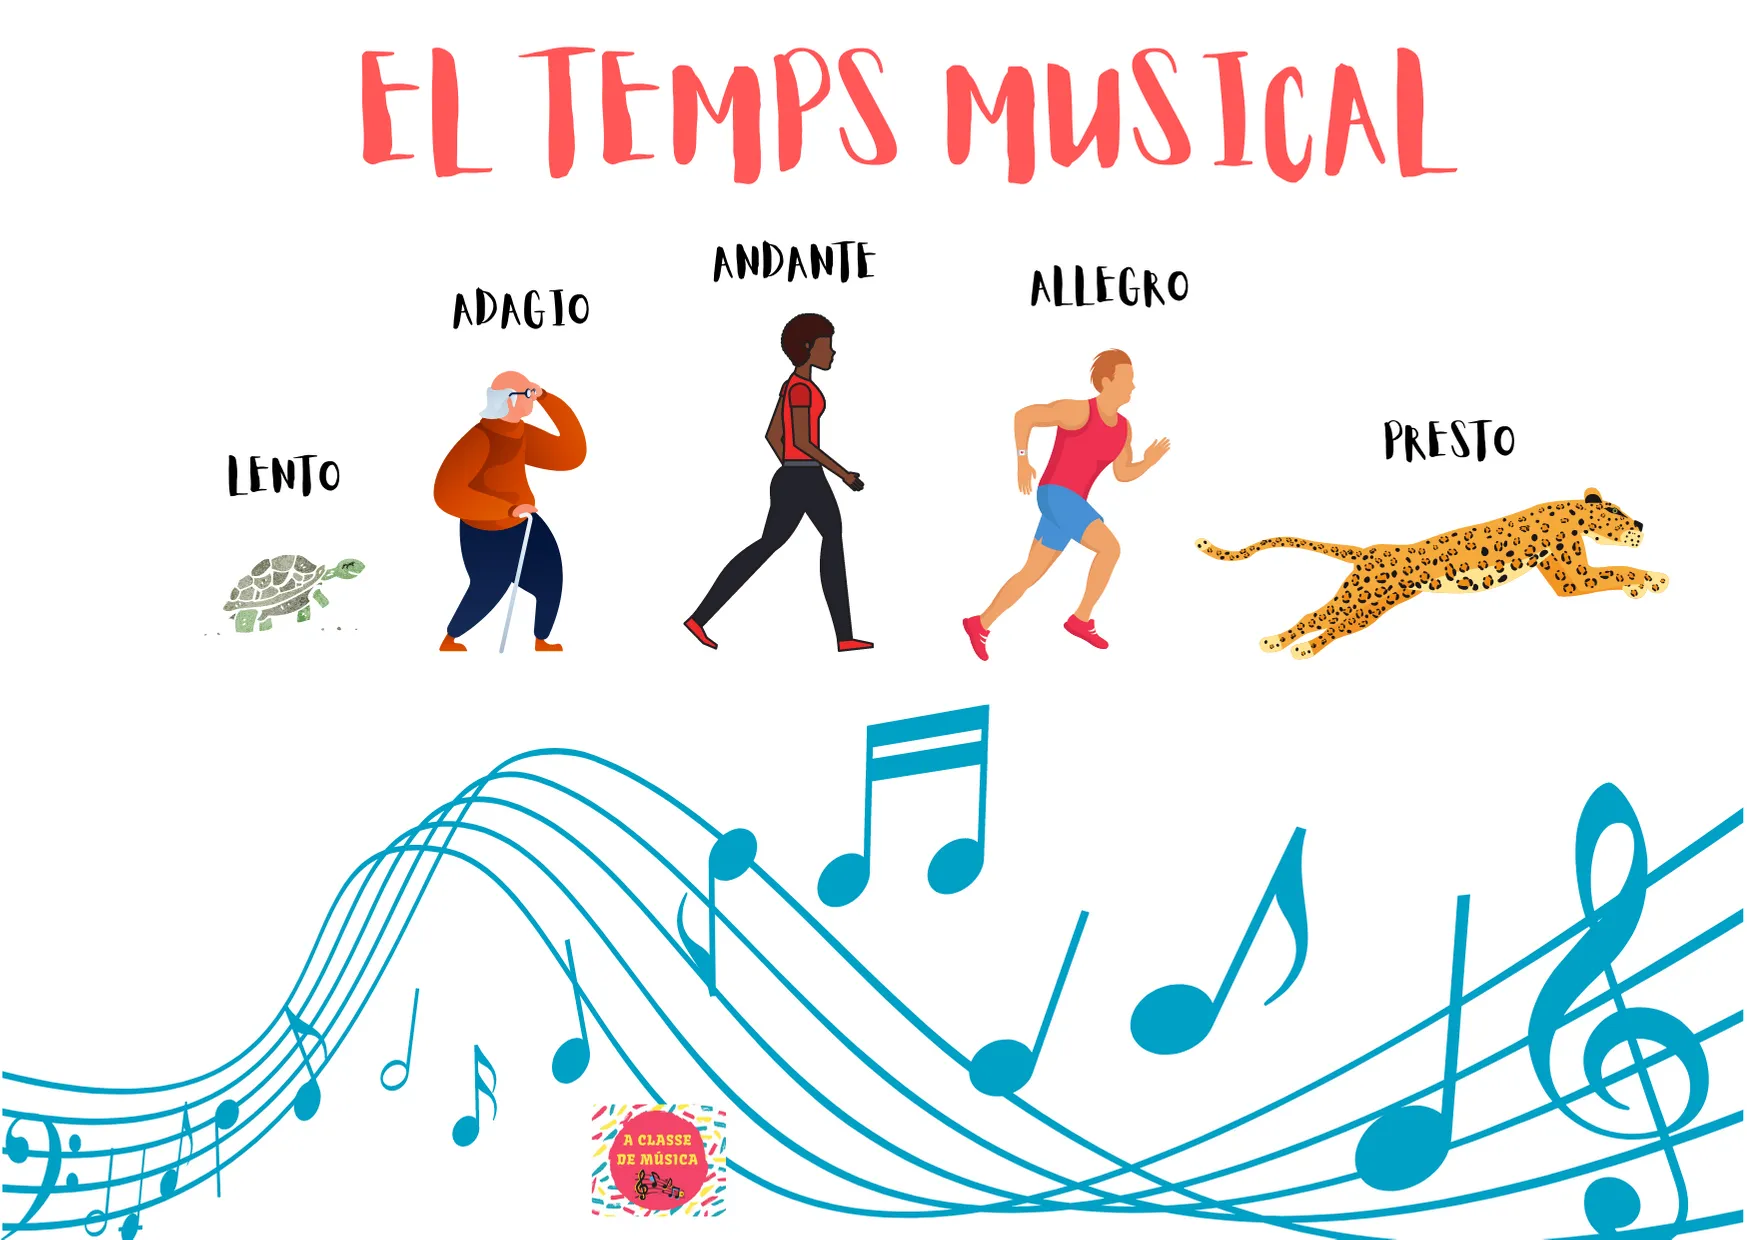 EL TEMPS MUSICAL